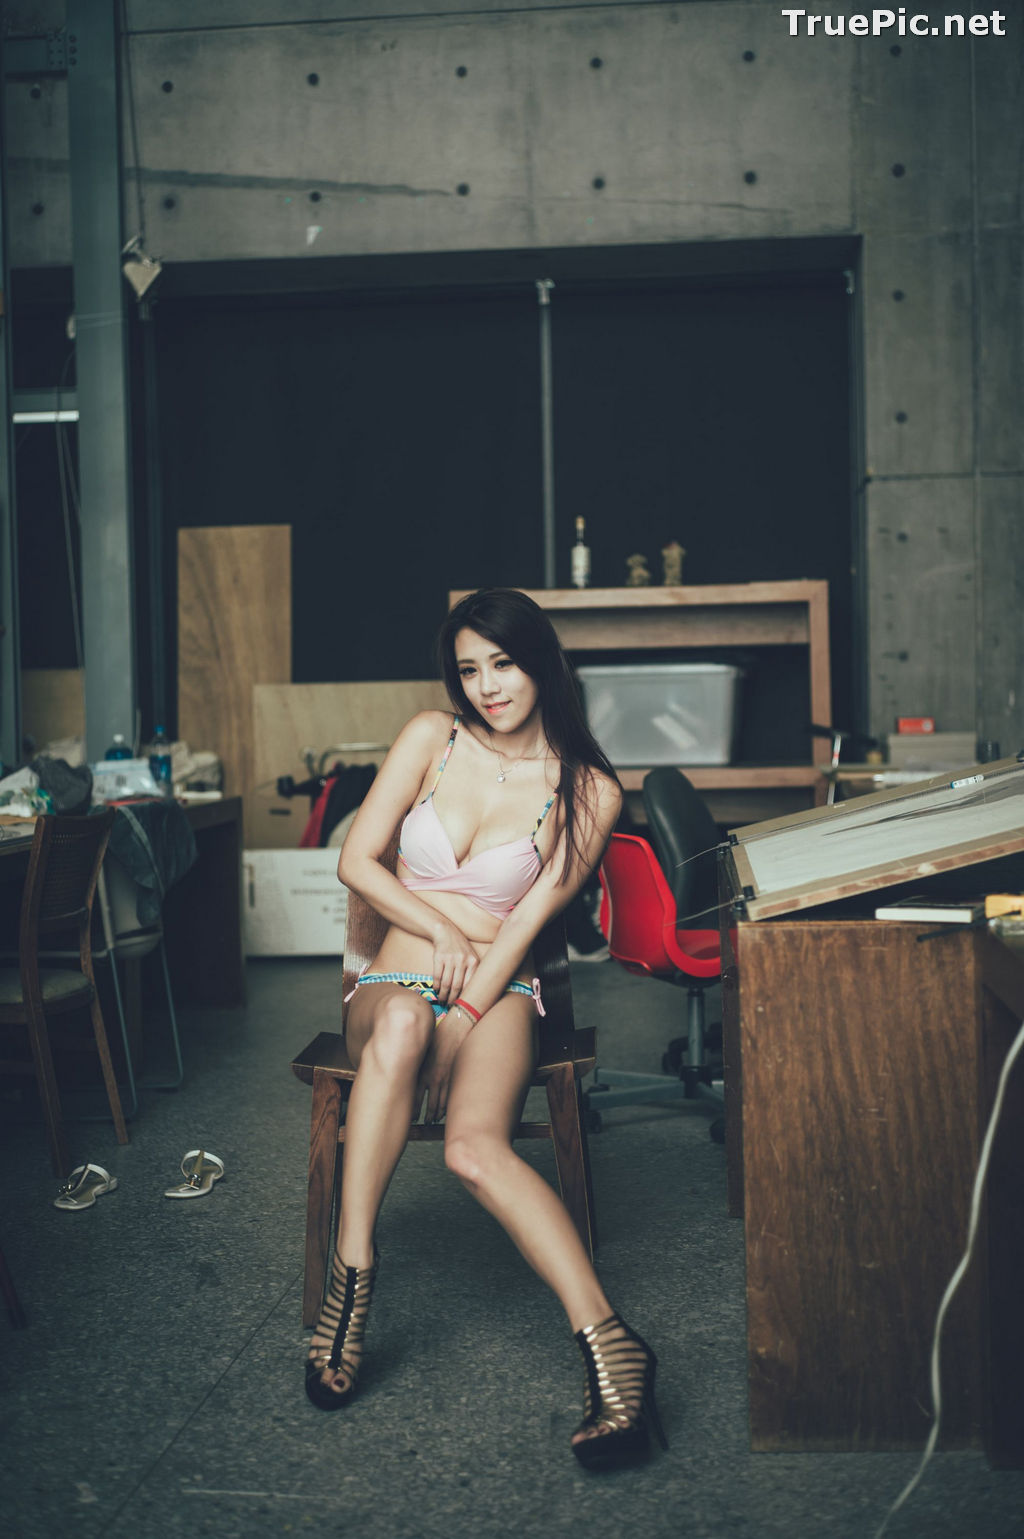 Image Taiwanese Model - 魏曼曼 (Amanda) - Bikini In The Room - TruePic.net - Picture-22